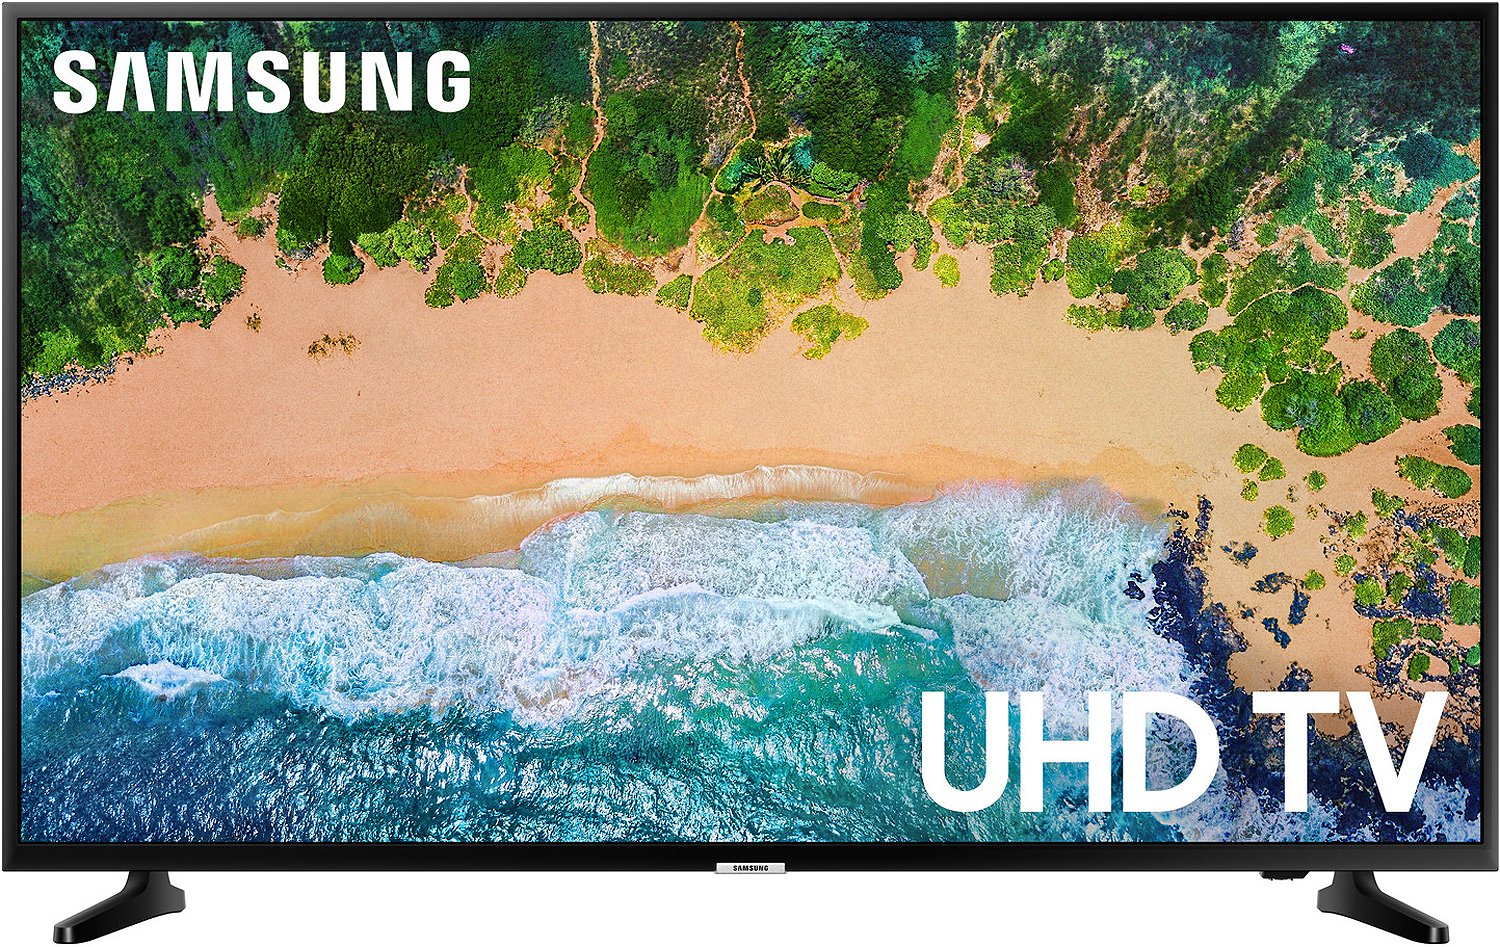 Samsung Smart TV 50" LED 4K(Refurbished)